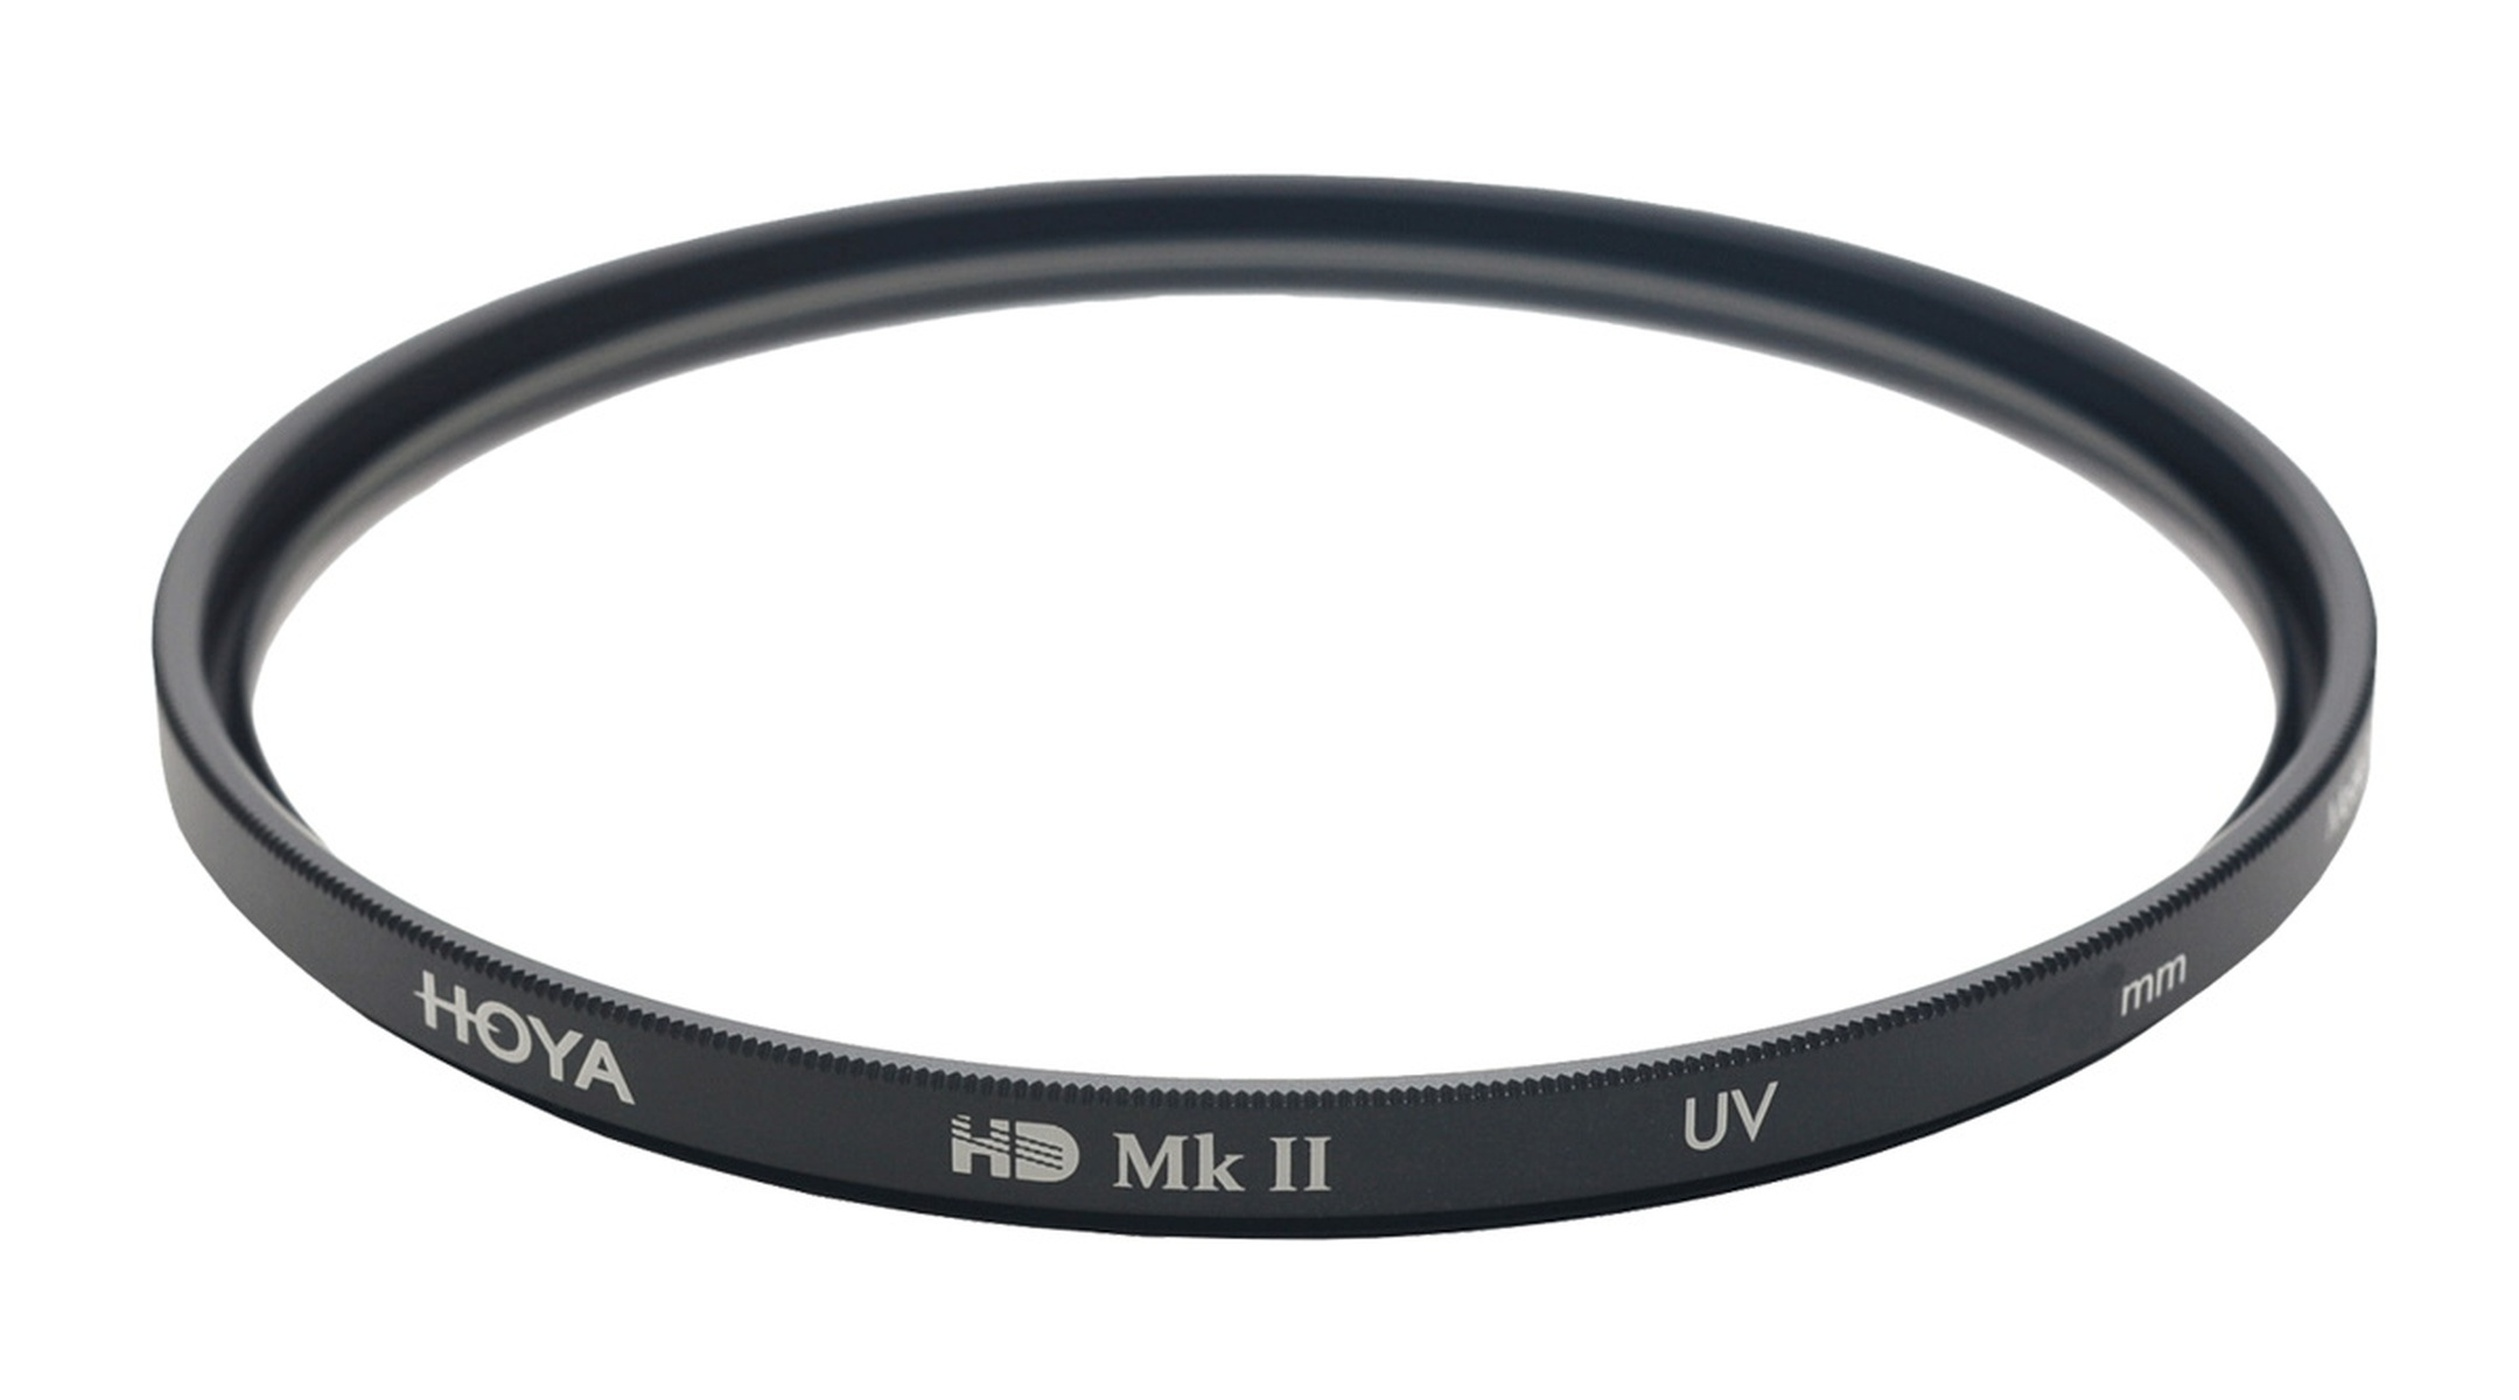 UV HOYA MkII Filter Filter 49 mm 49mm UV HD